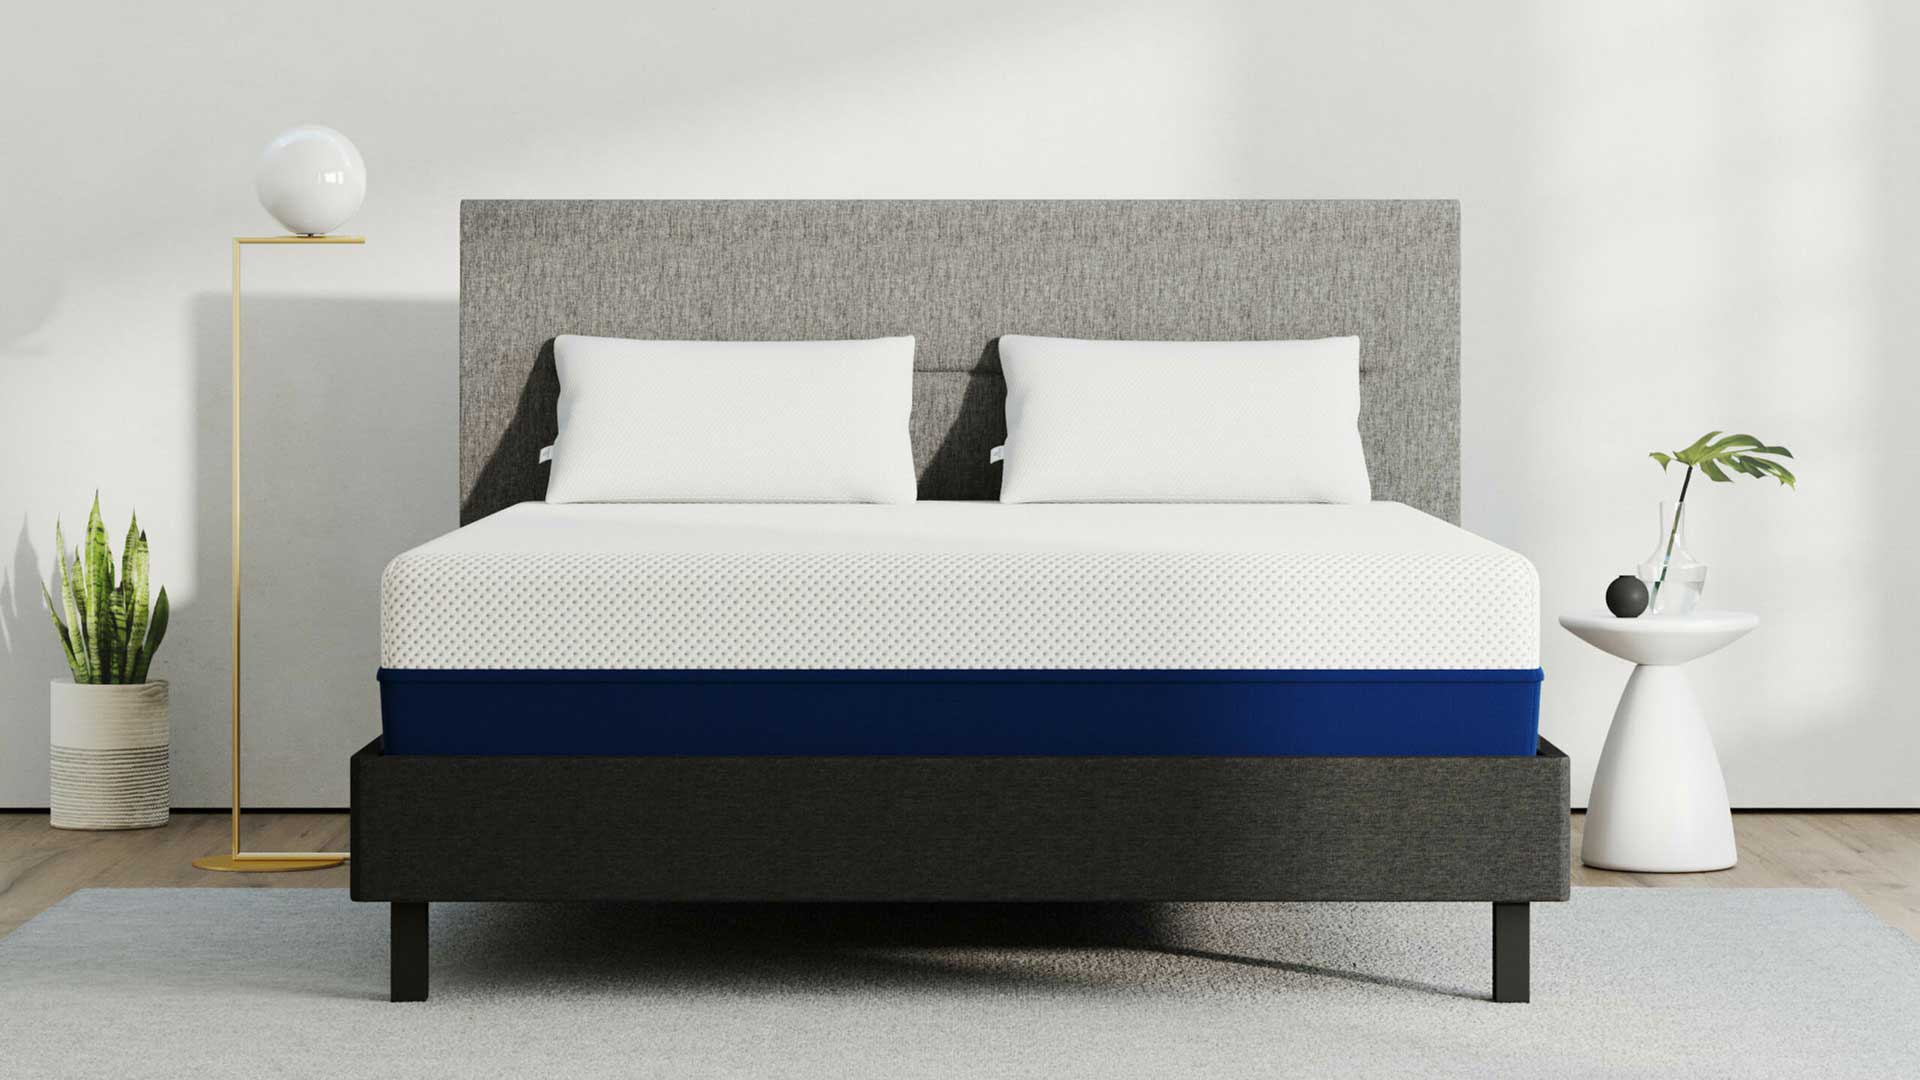 olympia WA amerisleep mattress